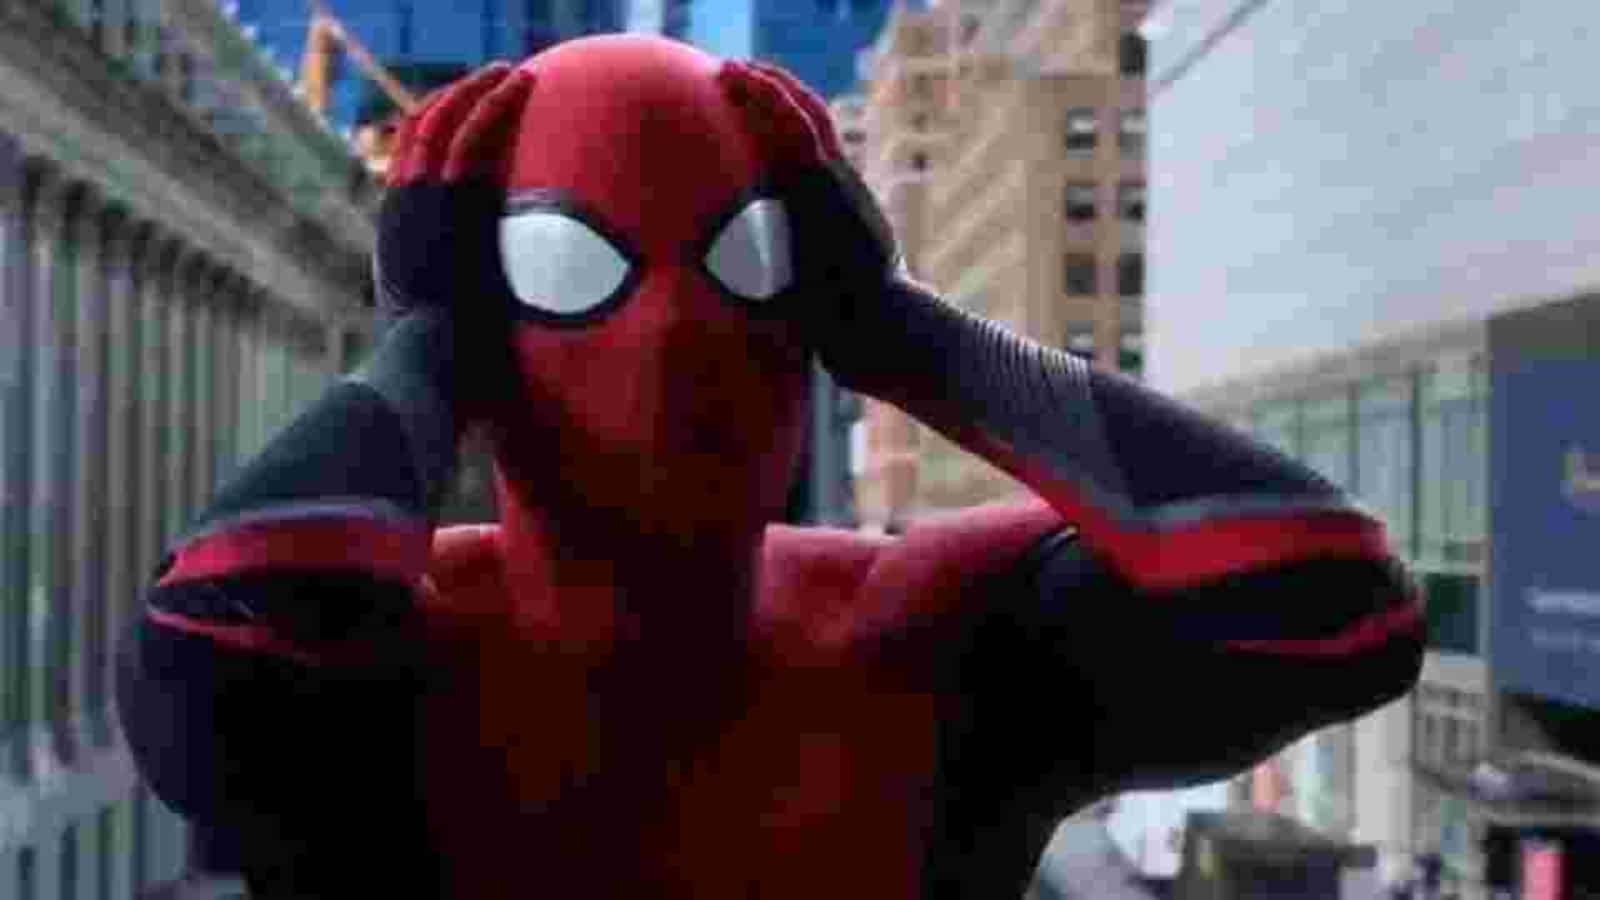 Spider Man 3: Tom Holland, Zendaya Debut Spider Man No Way Home In Hilarious Video. Watch